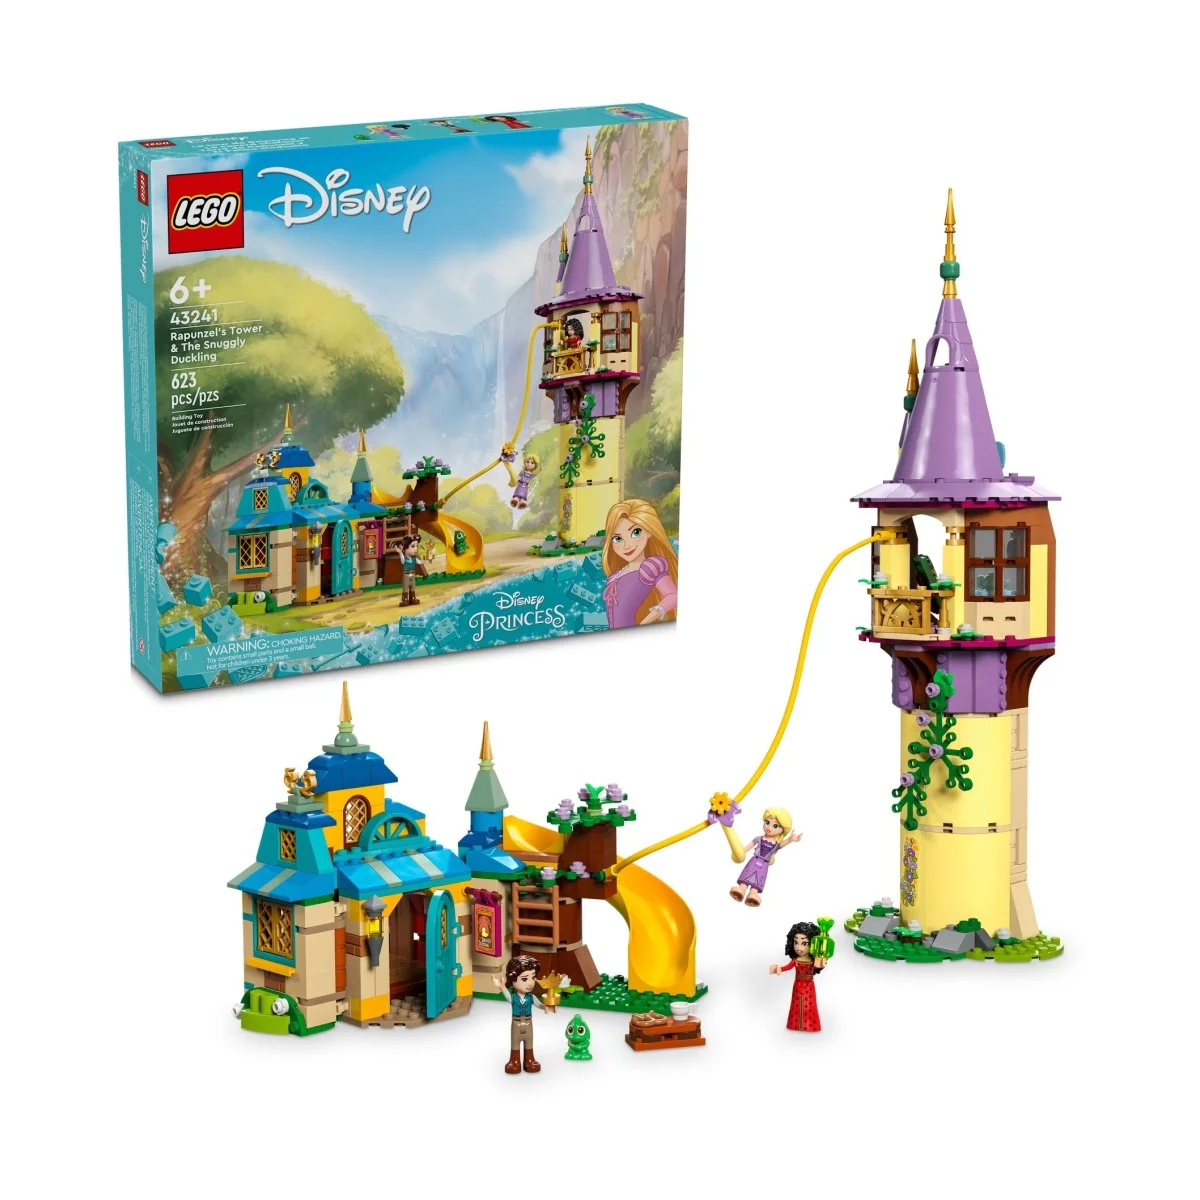 Конструктор Lego Disney Rapunzel's Tower & The Snuggly Duckling 43241, 623 детали конструктор lego disney princess 43241 башня рапунцель и утенок